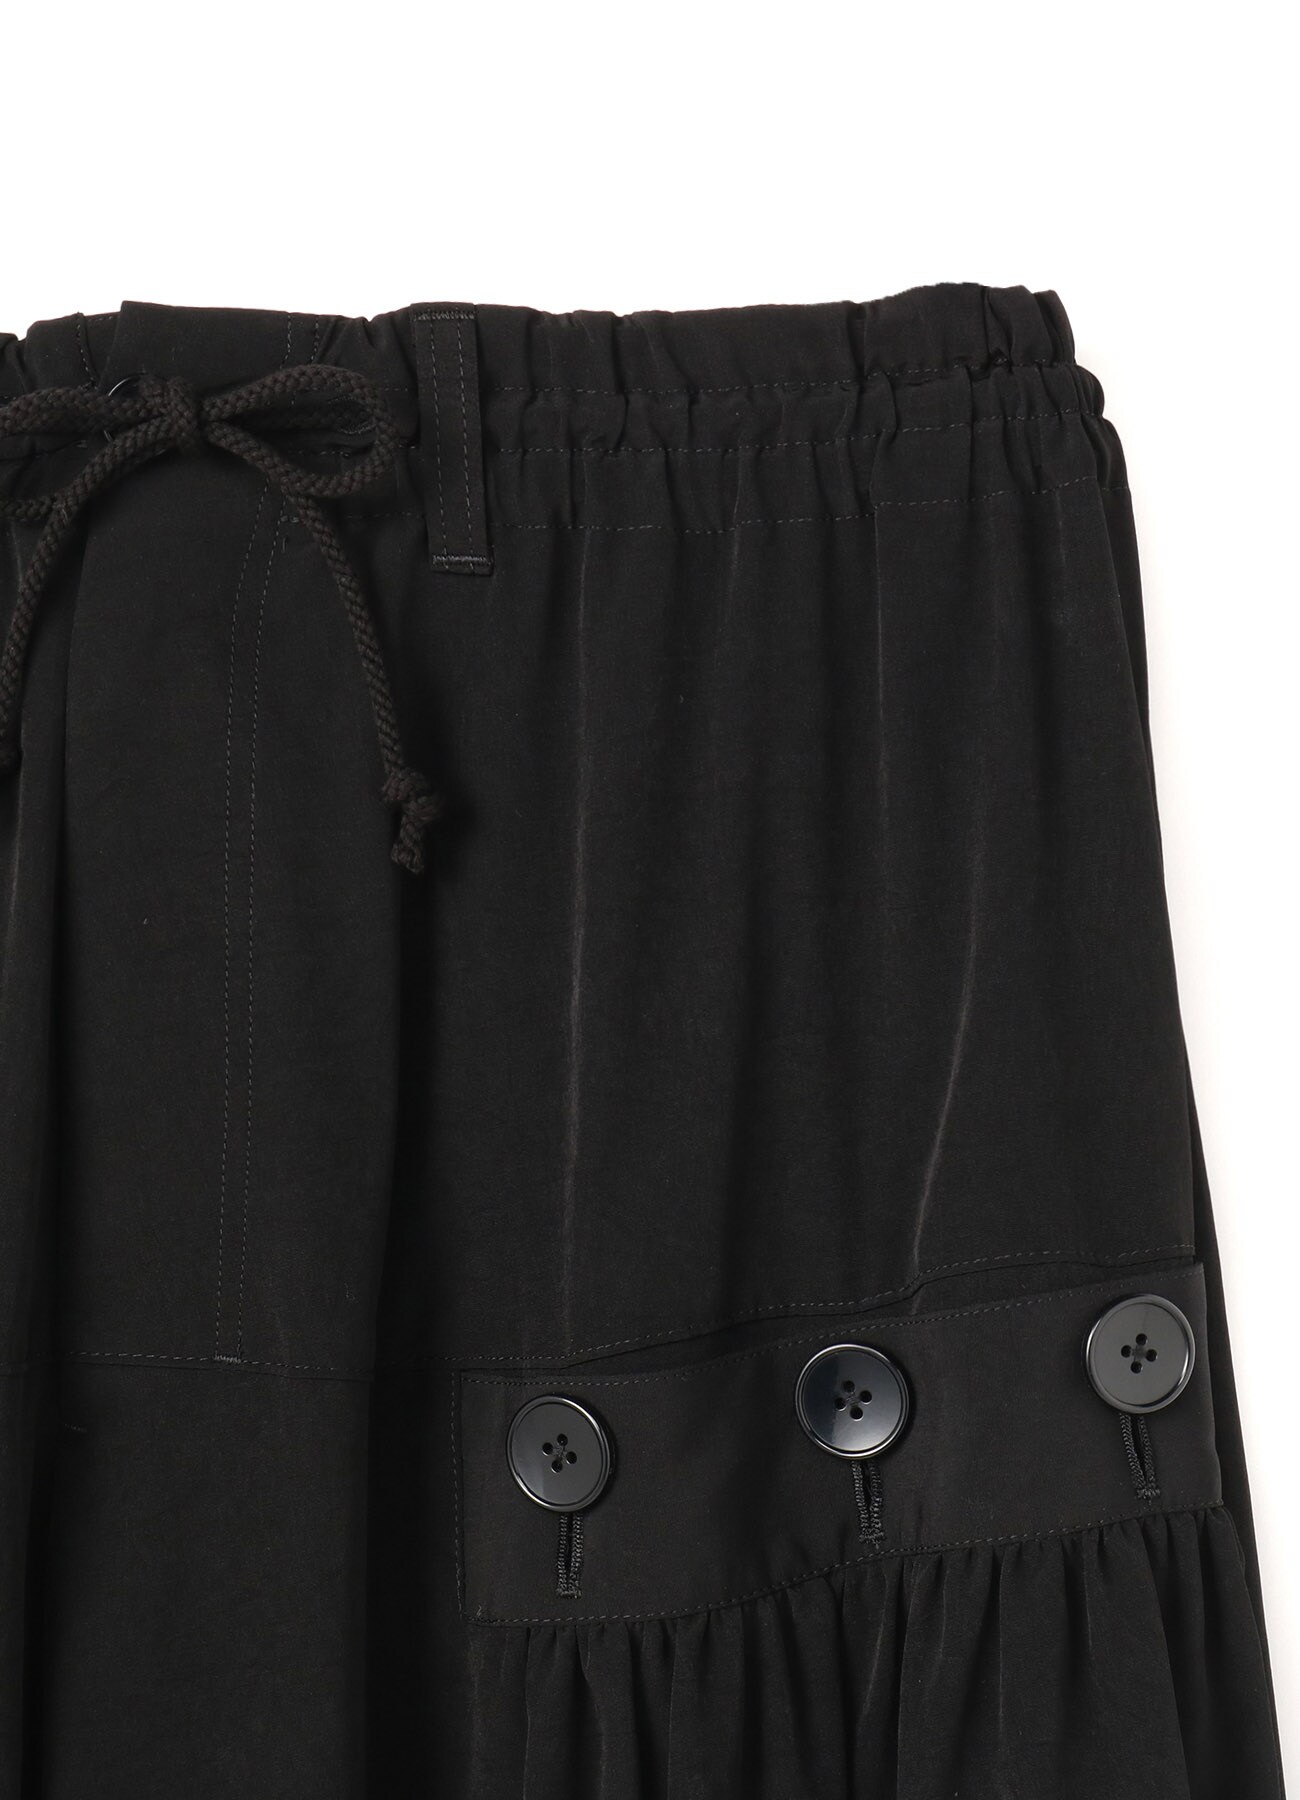 T/A vintage decyne Button drape sarouel pants